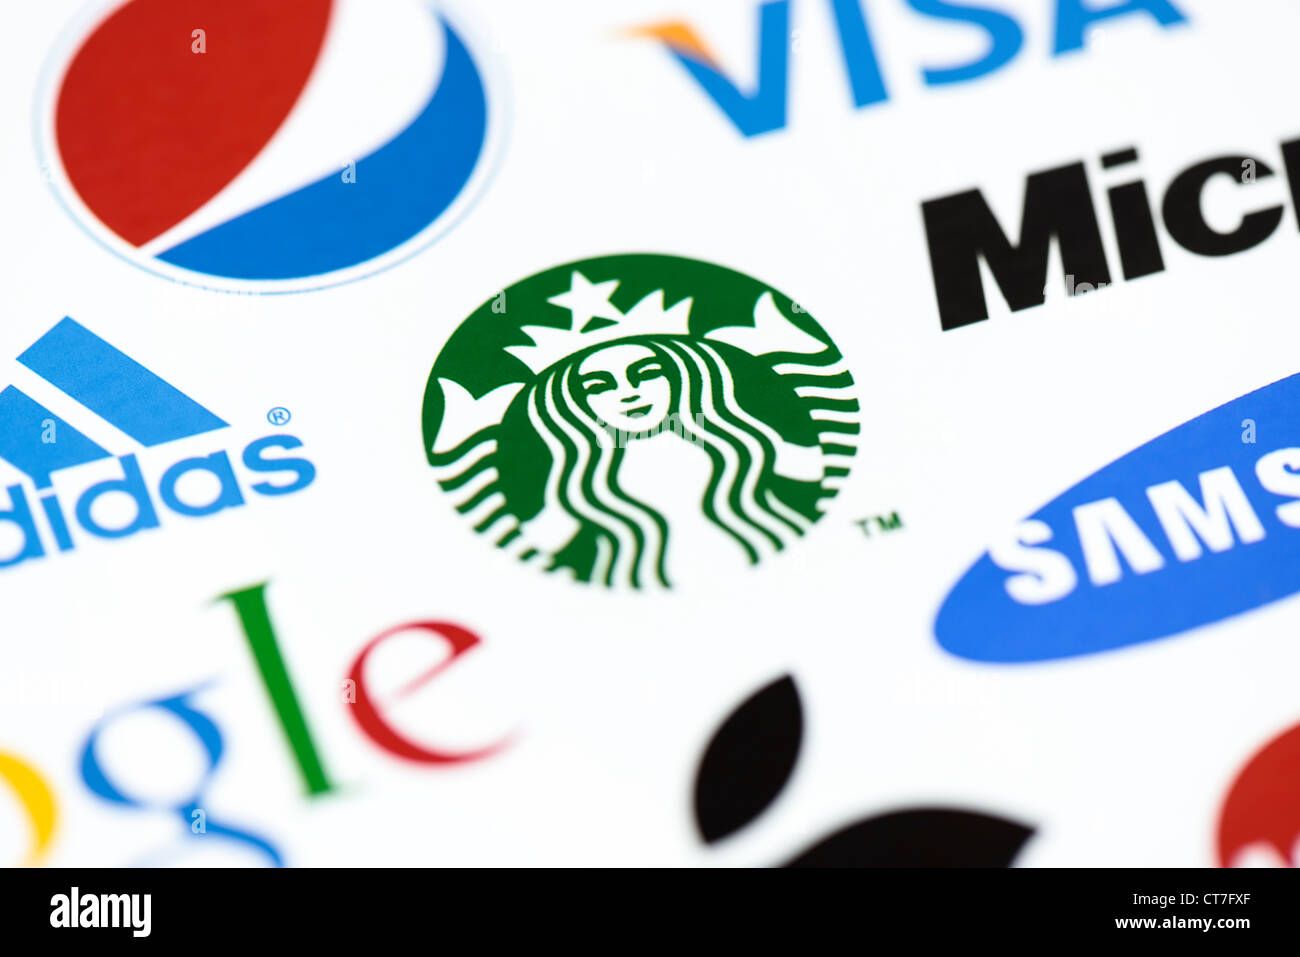 Foto der Starbucks-Logo auf dem bedruckten Papier zusammen mit einer Sammlung von bekannten Marken der Welt hautnah. Stockfoto